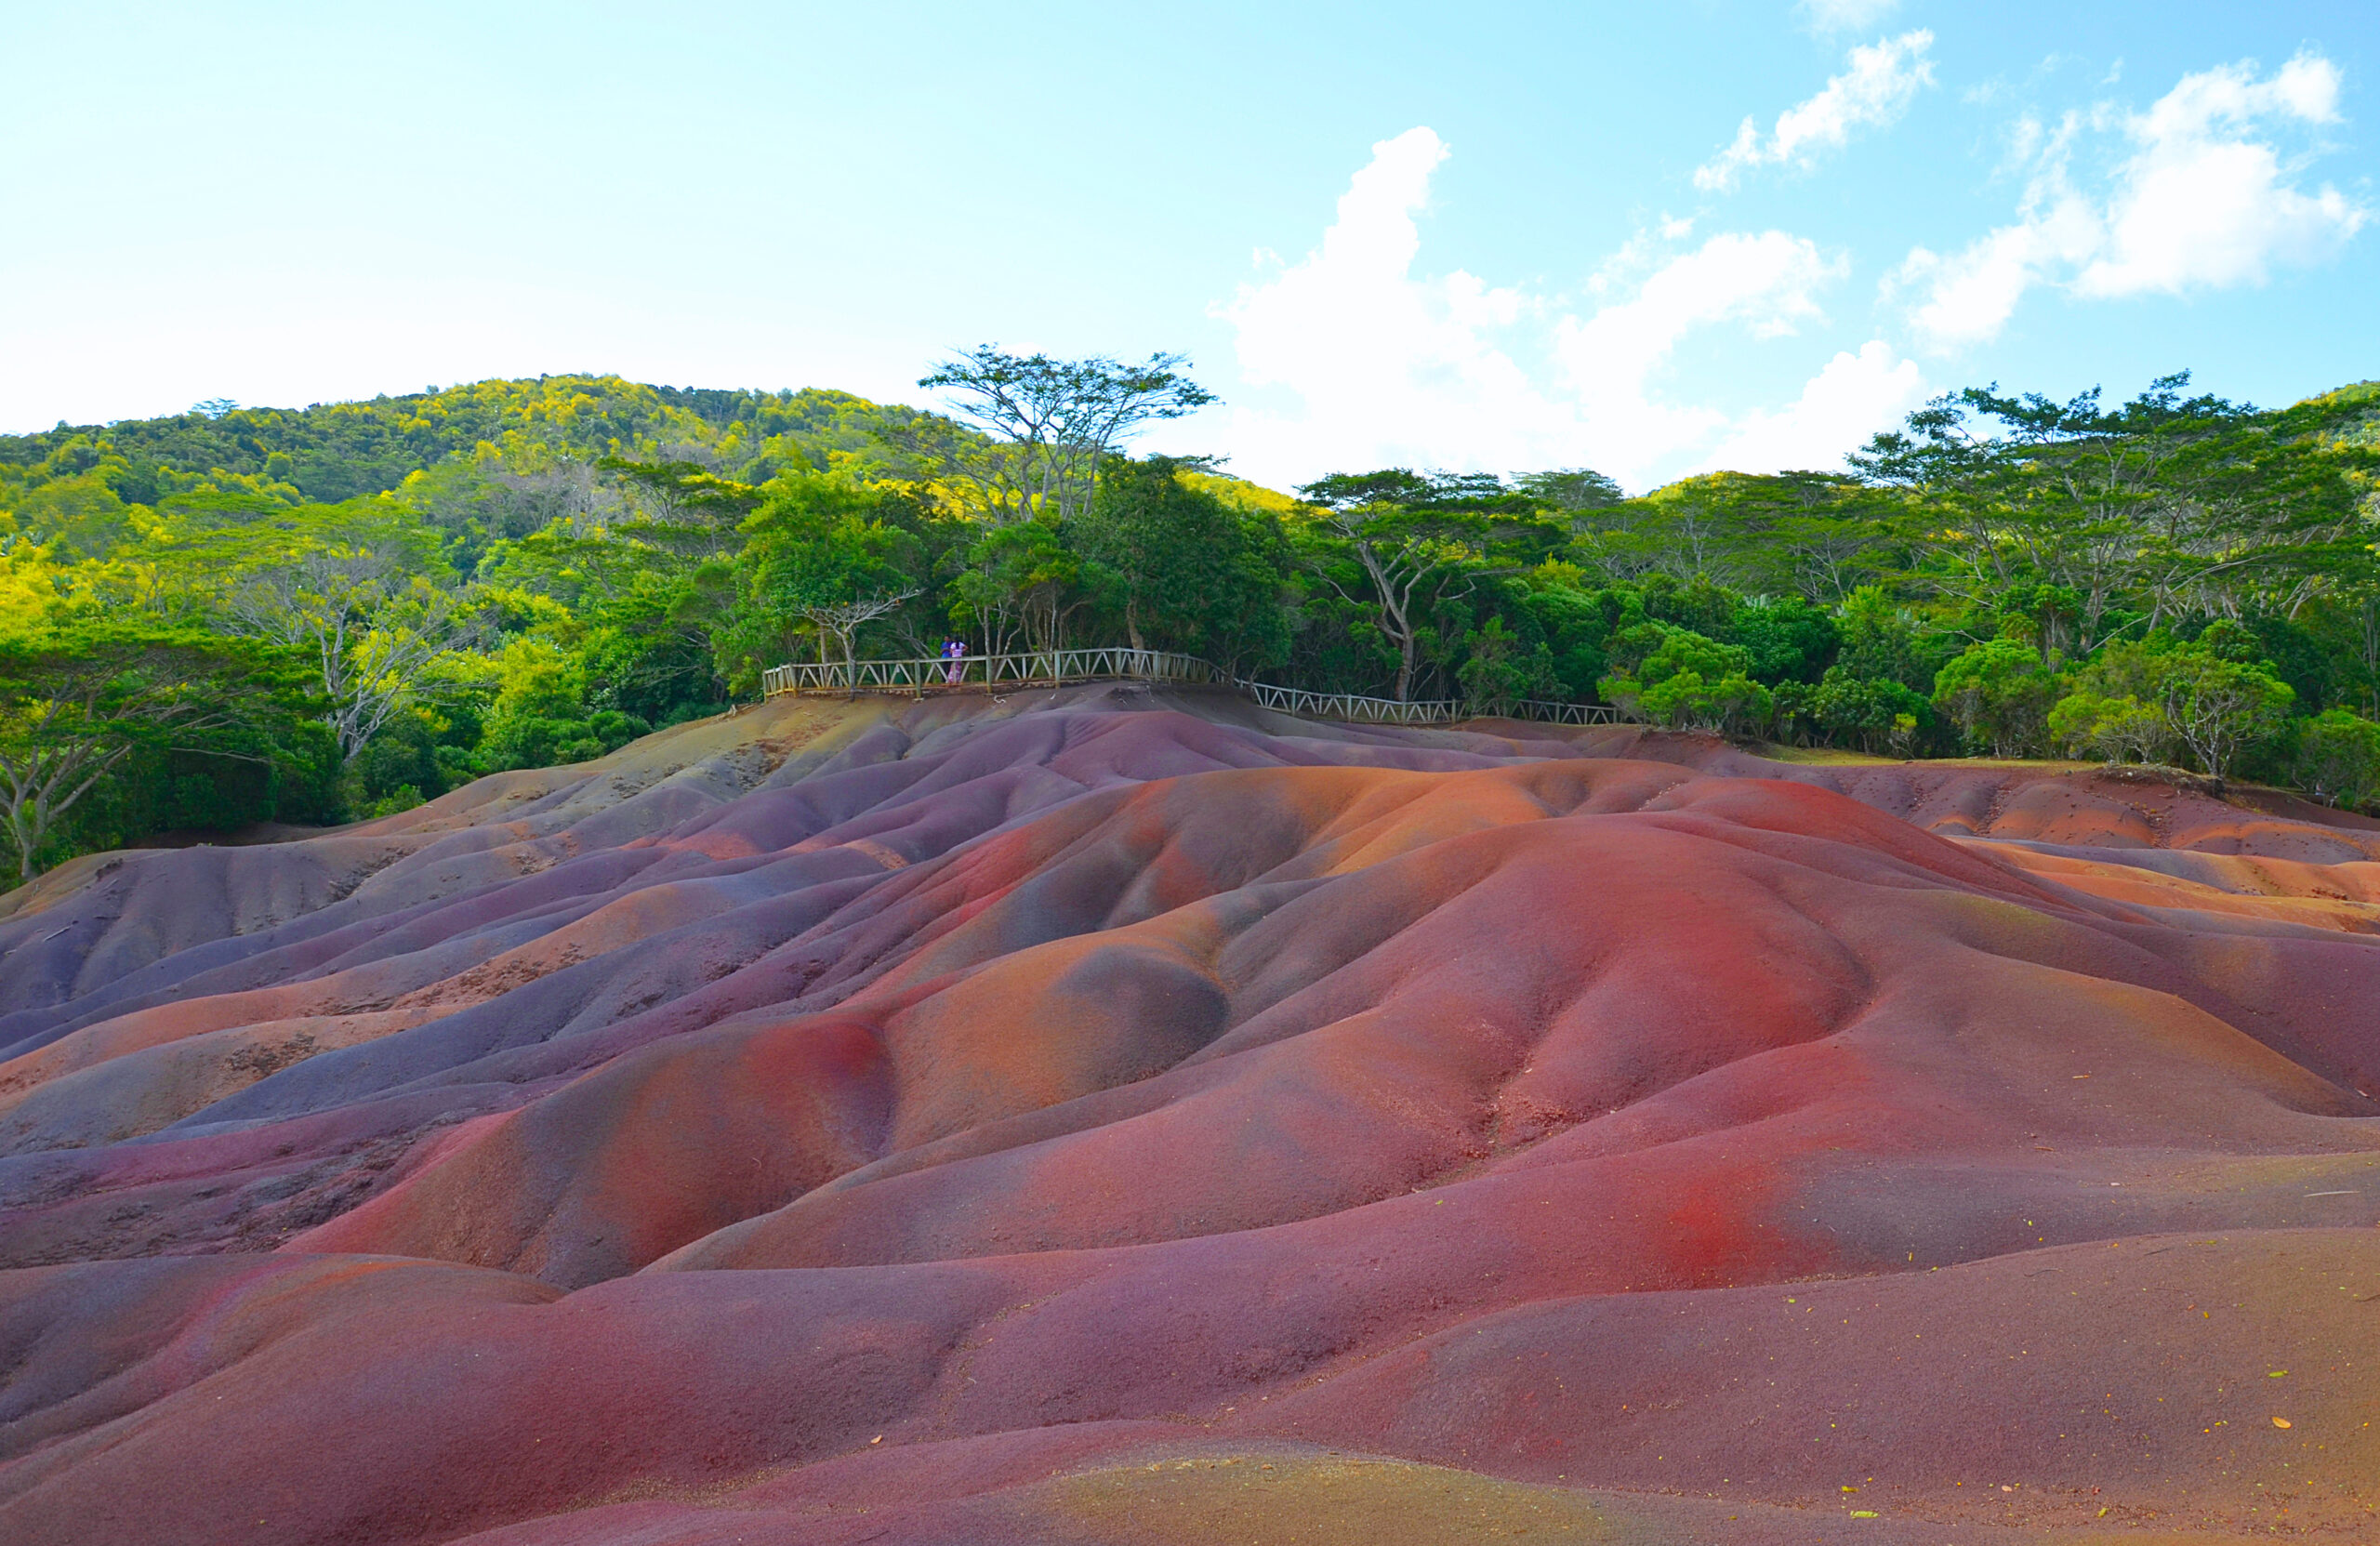 Die bunteste Sehenswürdigkeit auf Mauritius: Die sieben farbige Erde.